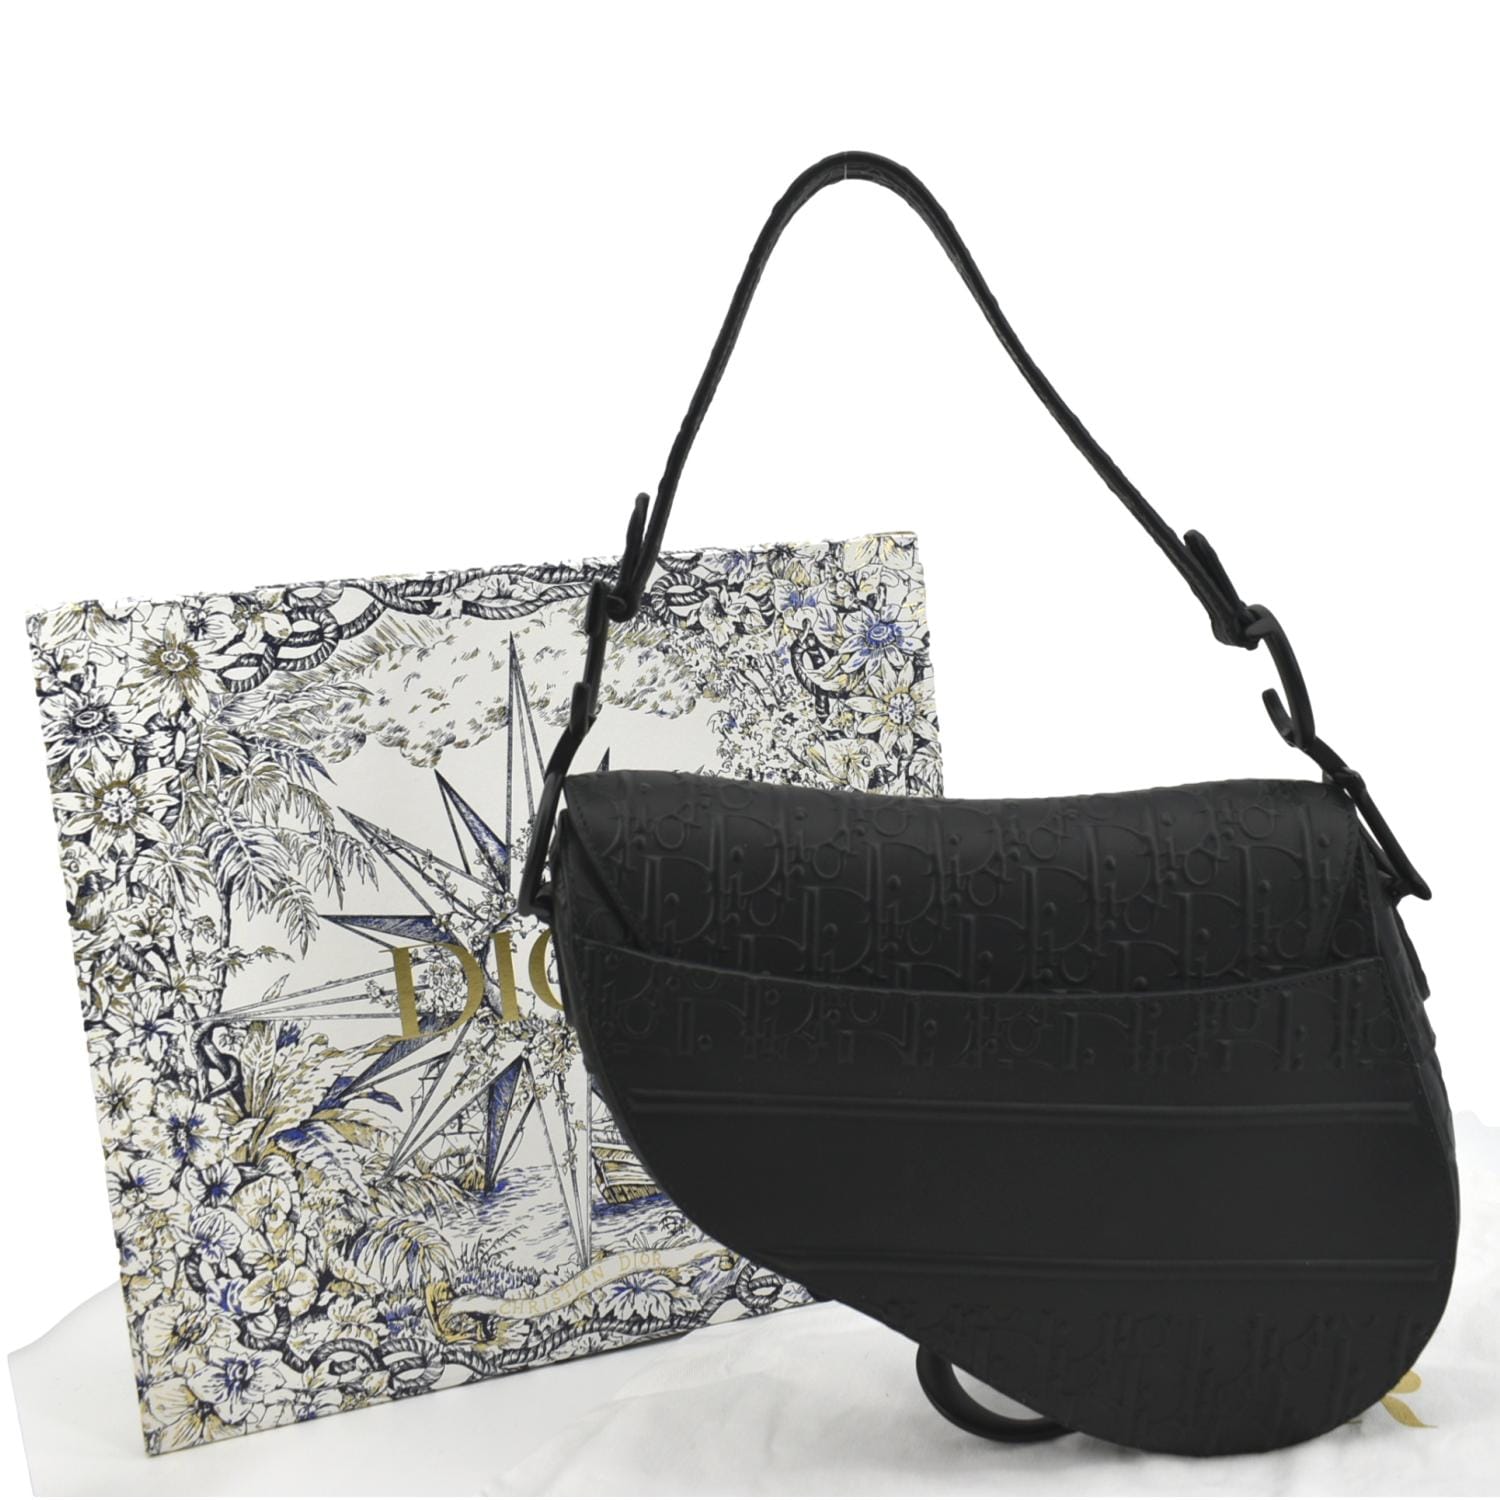 Dior Black Saddle Bag  Black saddle bag, Dior, Dior saddle bag